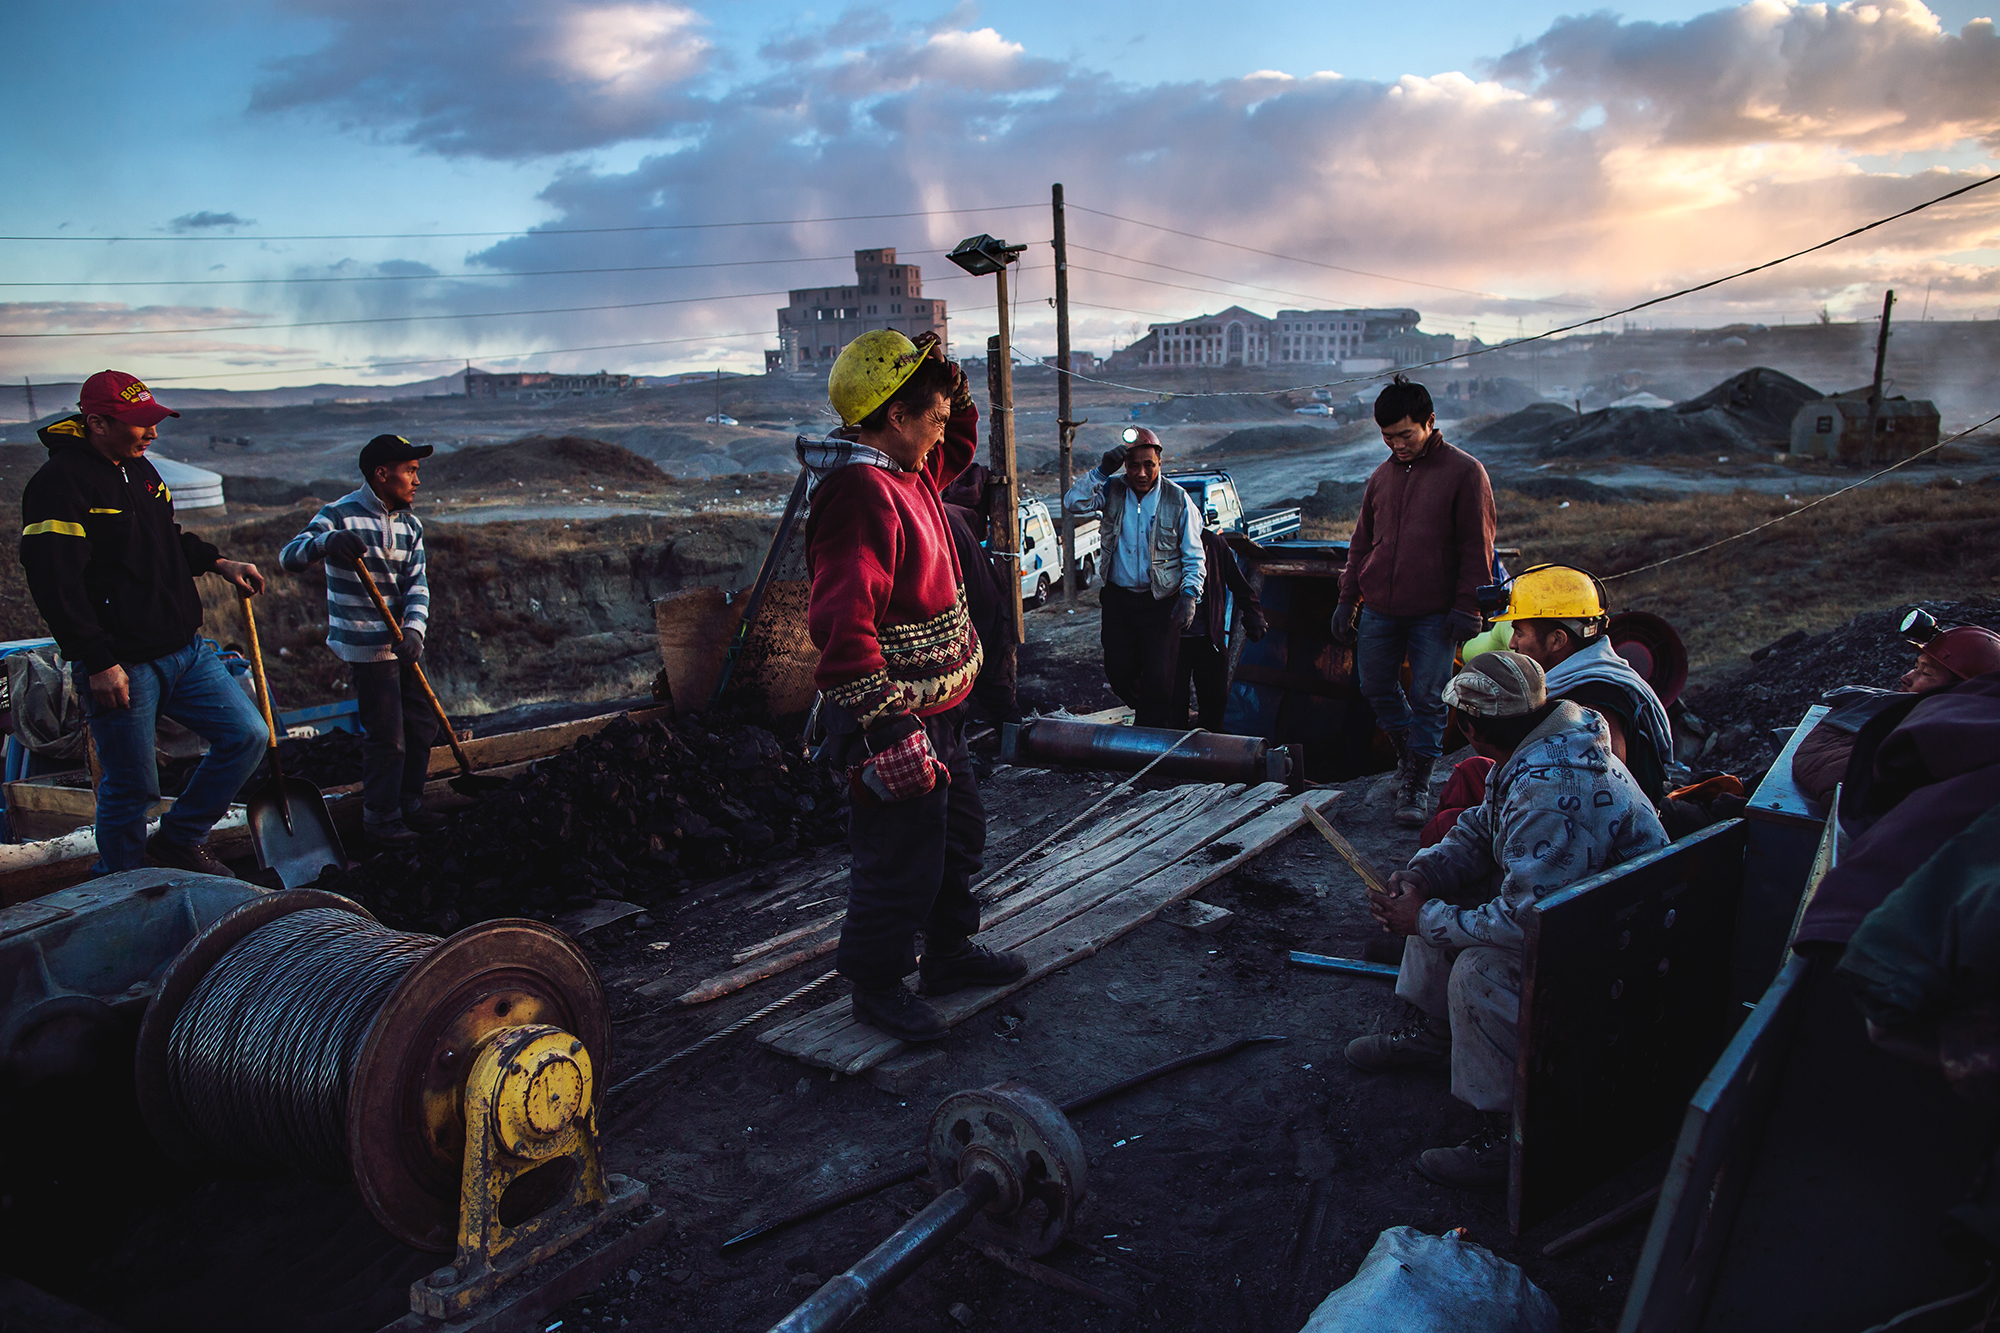 Часто на нелегальных шахтах работают семьи, отказавшиеся от кочевой жизни и перебравшиеся в города. Не все смогли привыкнуть, но вернуться к хозяйству уже не могли.

Экономическое благополучие Монголии напрямую зависит от экспорта полезных ископаемых. На него приходится почти 88% экспортной выручки страны. Когда в 2011 году цена на медь в мире выросла, годовой экономический рост составил 17,3%, но после падения цены на медь рост замедлился до 2,3% в 2015 году и около 0,3% в 2016 году.
